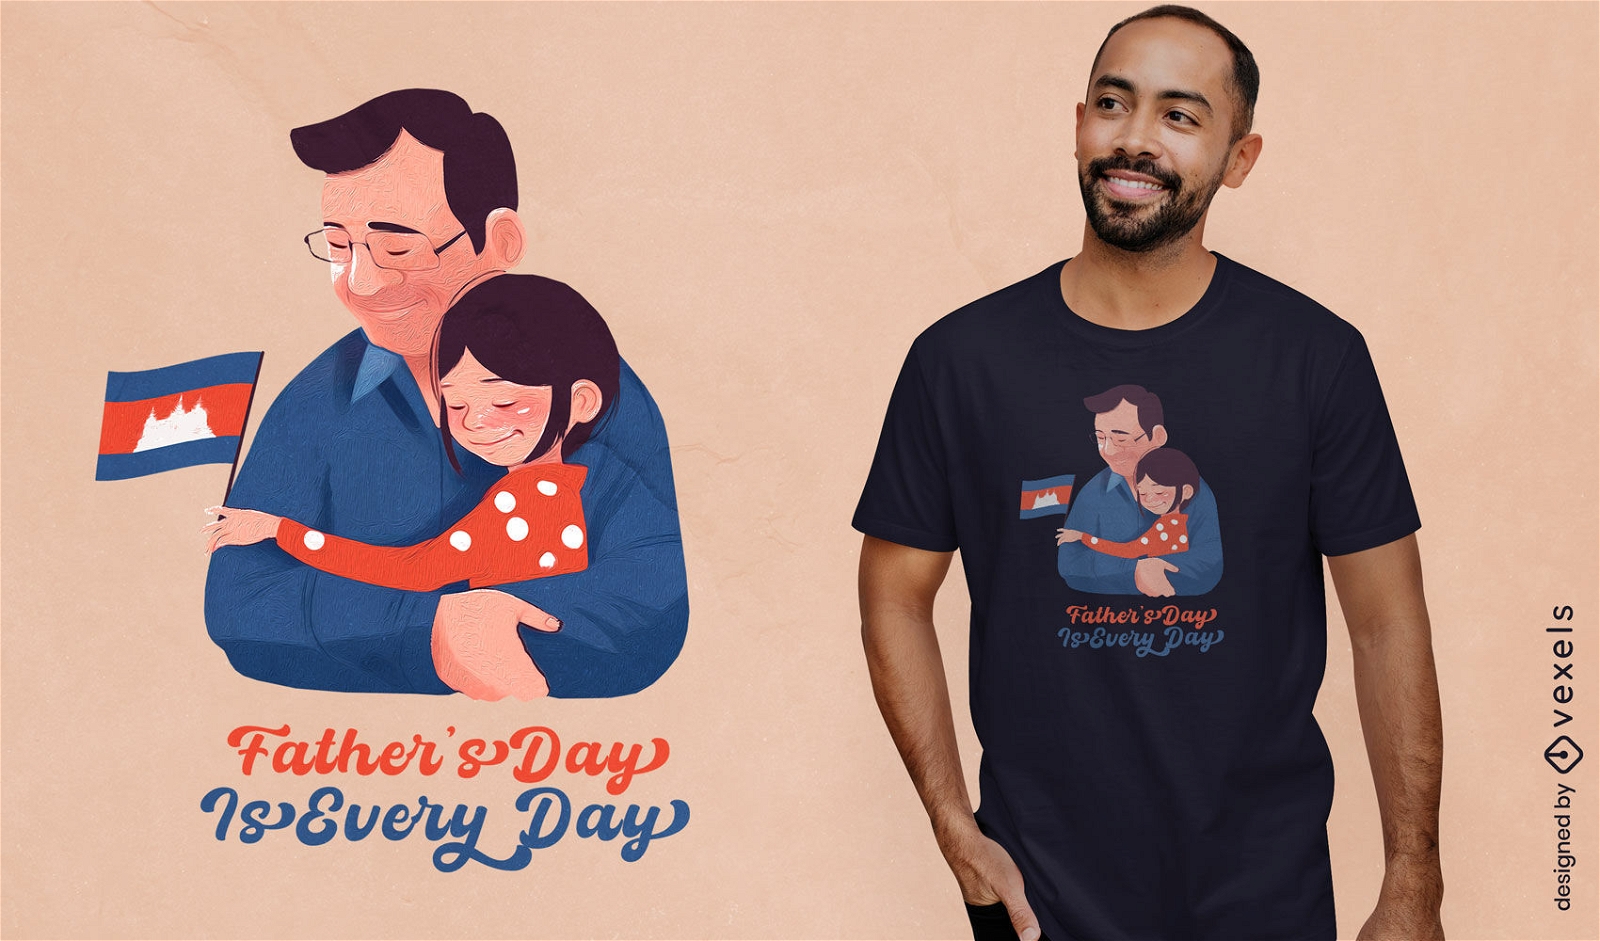 Dise?o de camiseta del d?a del padre camboyano.